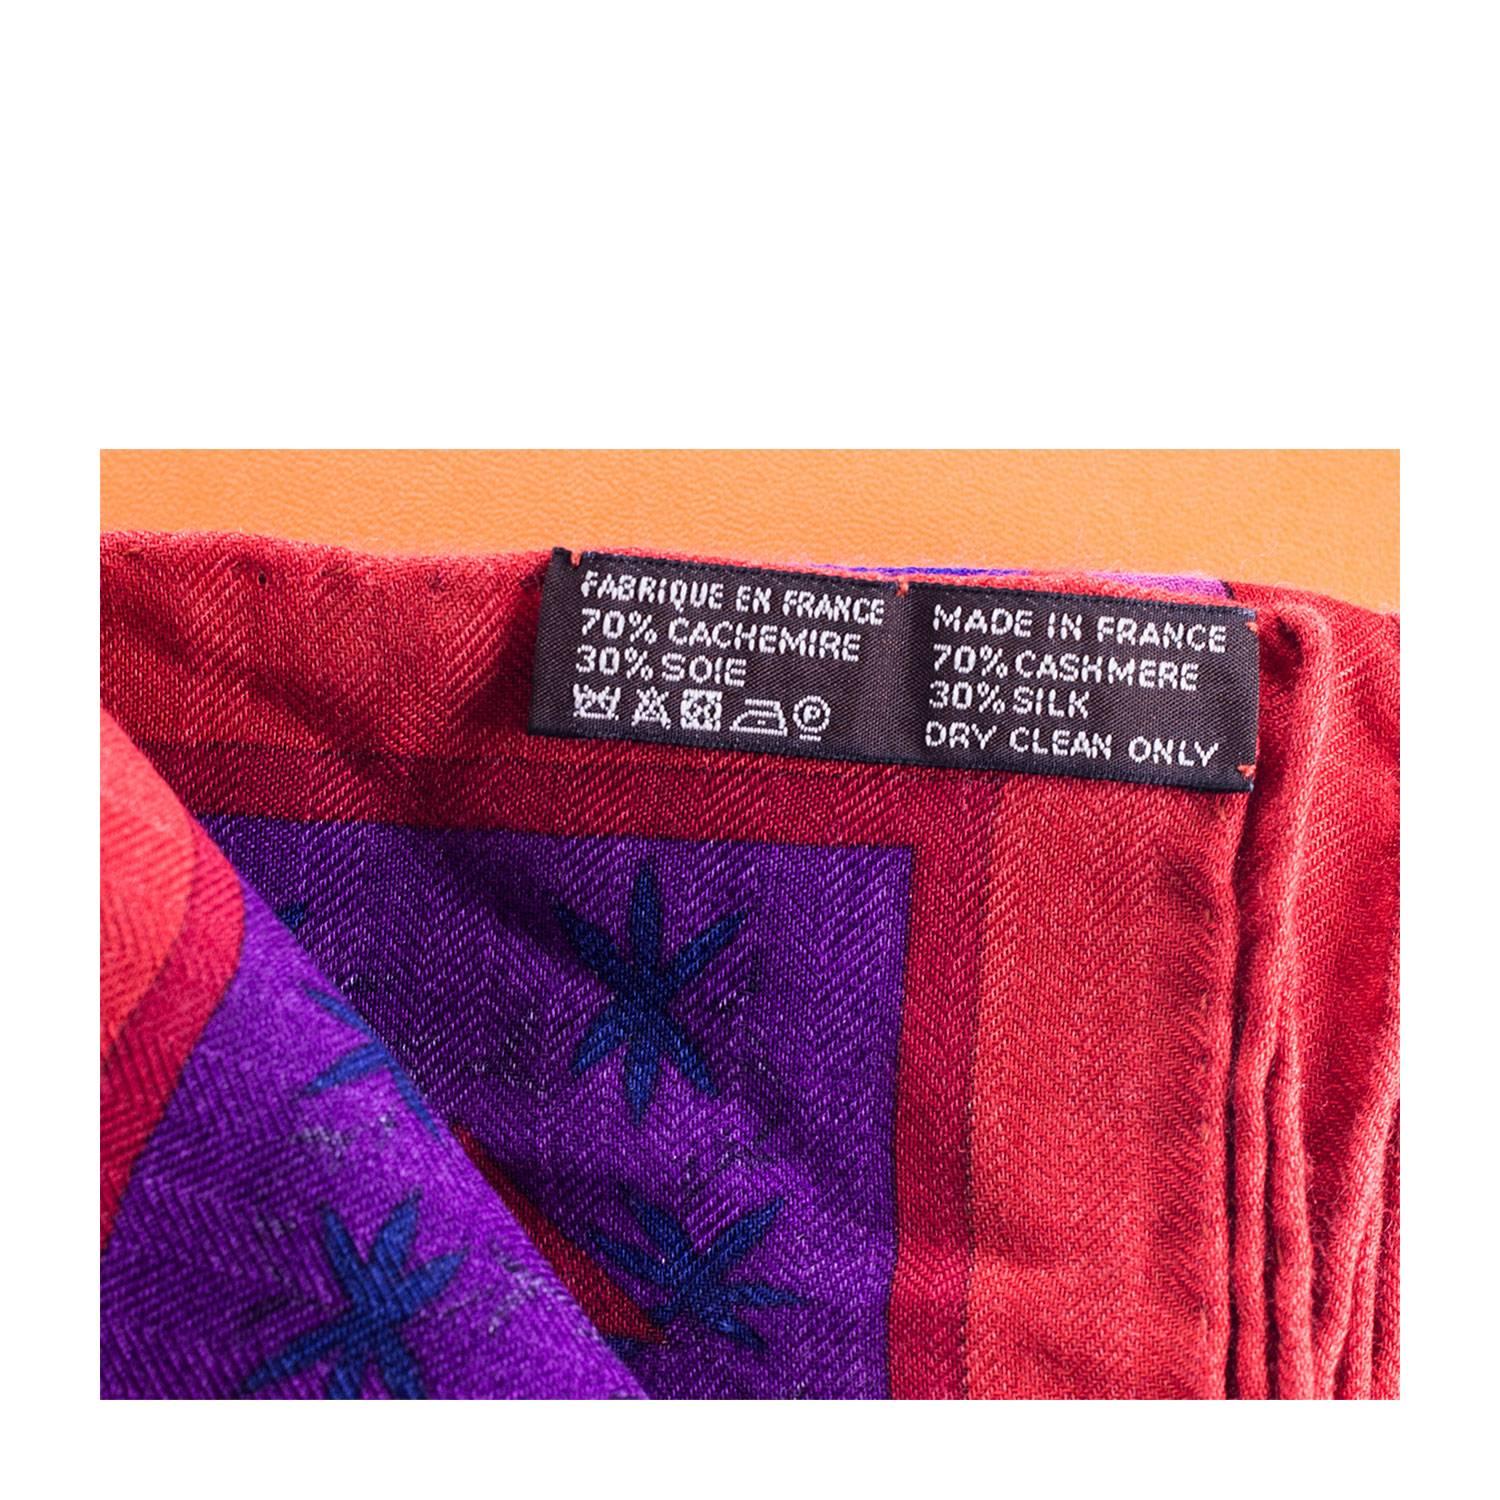 Hermes Shawls (Chale) 140cm Kachinas Model Red/Blue/Violet Color 2016 1